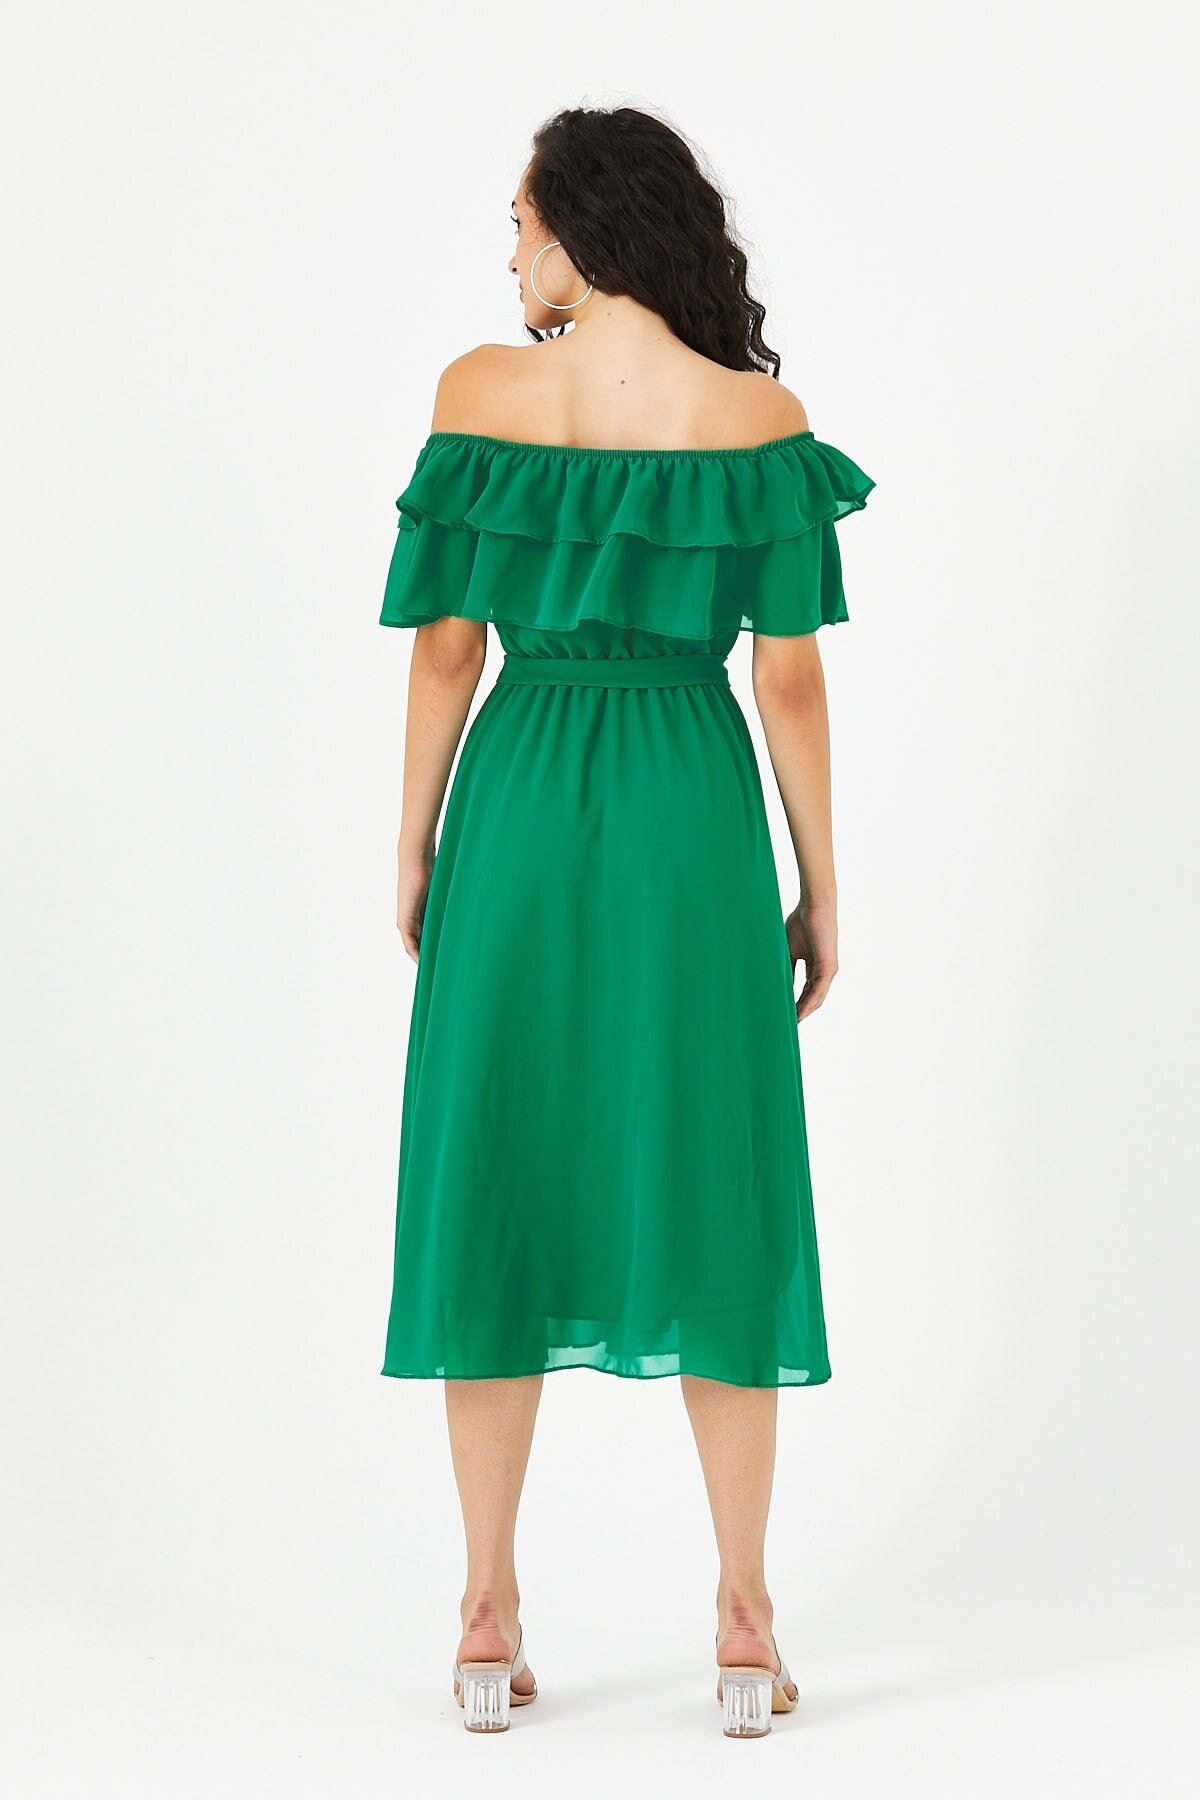  Kadın Carmen Yaka Şifon Yeşil Elbise 2D-5011